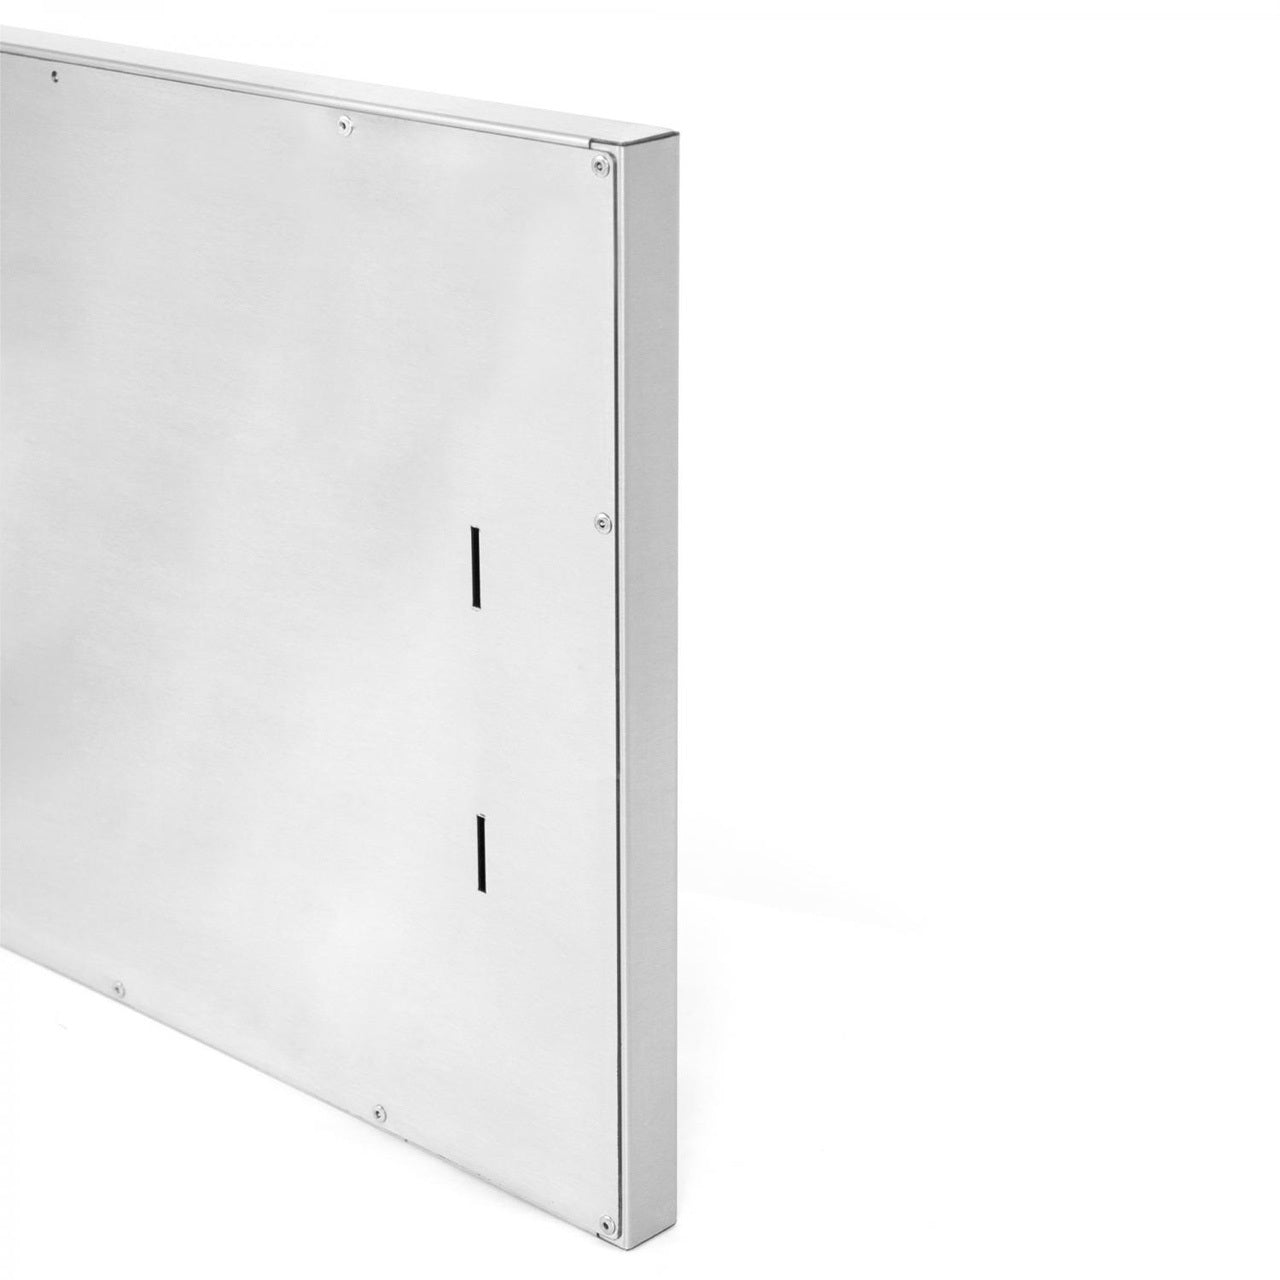 BBQ Island 350 Series - 14x20 Single Access Vertical Door